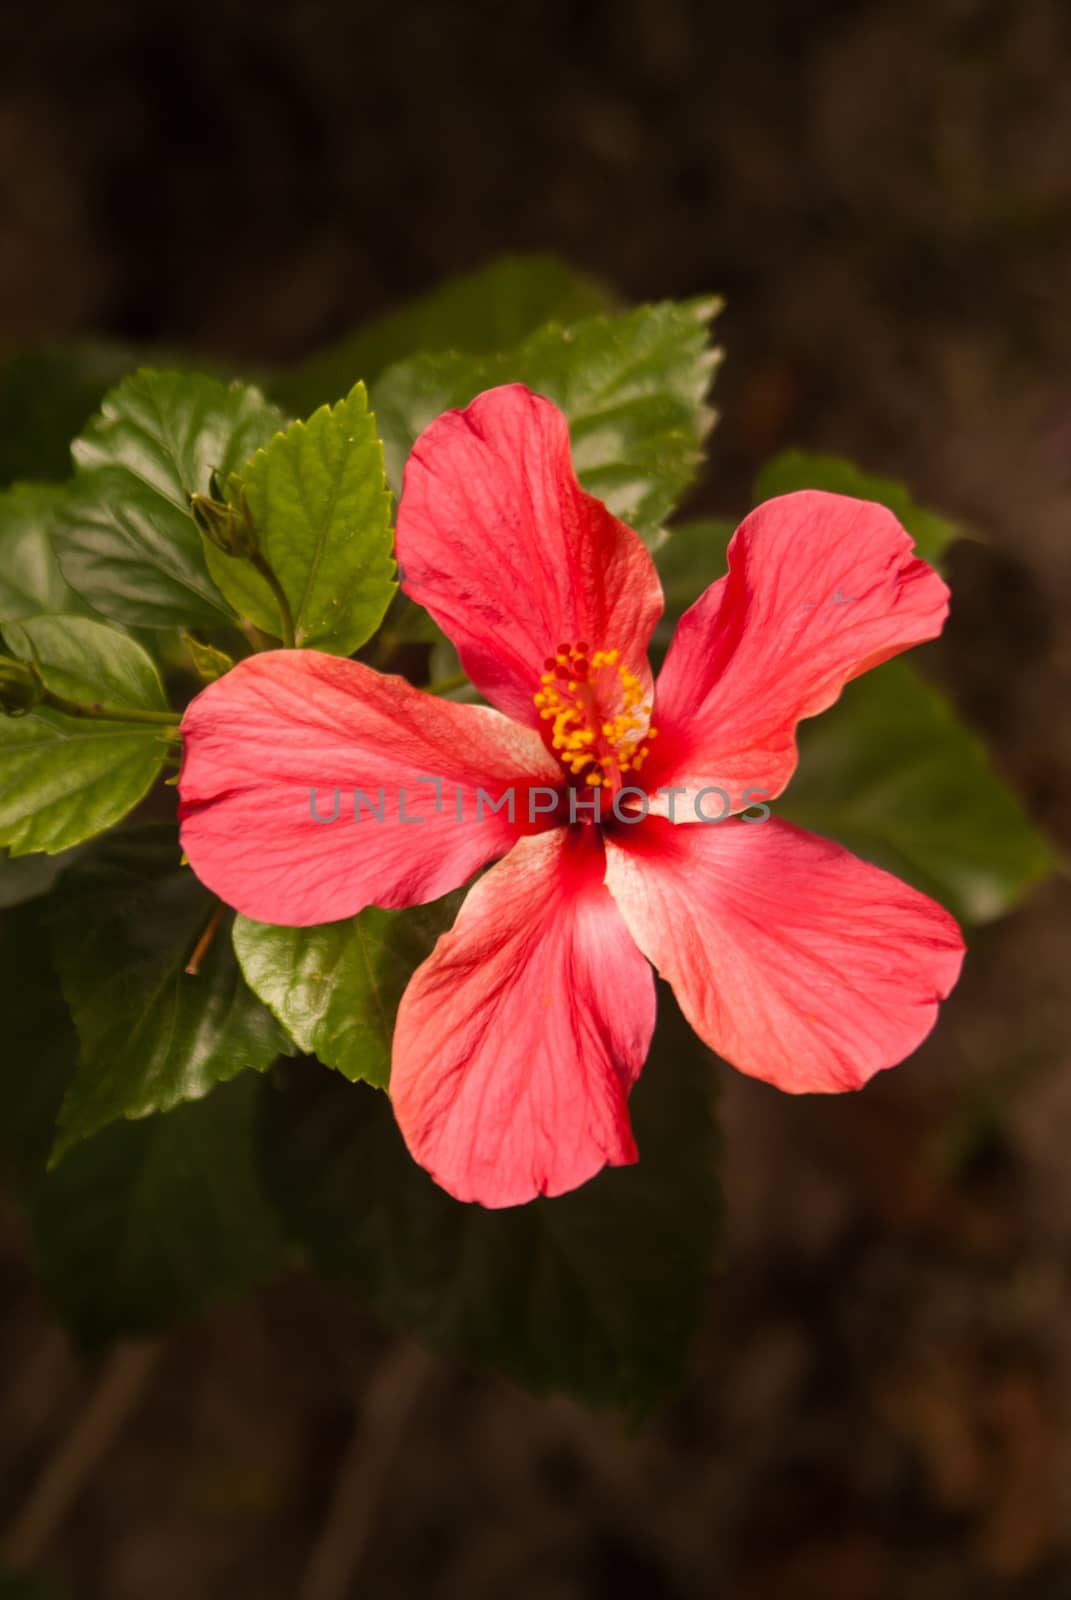 Sunlight on single red flower